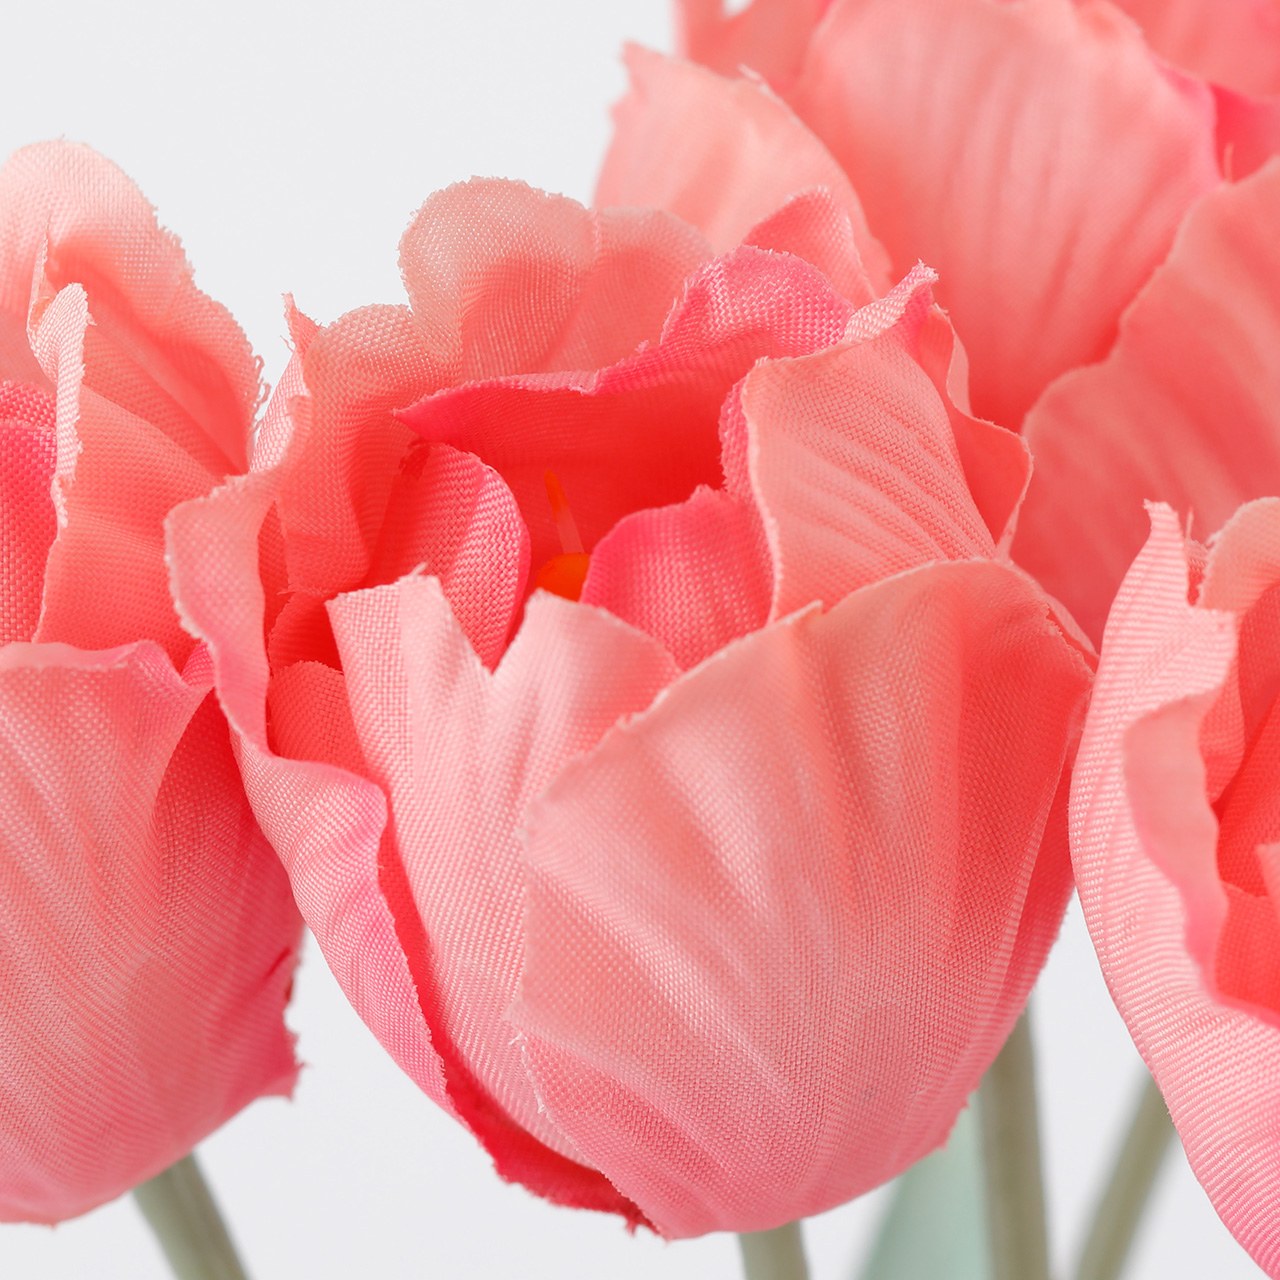 マイフラ】 通販/MAGIQ マカロンチューリップバンドル ホットピンク アーティフィシャルフラワー 造花 チューリップ  FM008053-052(ホットピンク): MAGIQ(アーティフィシャルフラワー 造花)/全国にMAGIQ、花器、花資材などをお届けします。